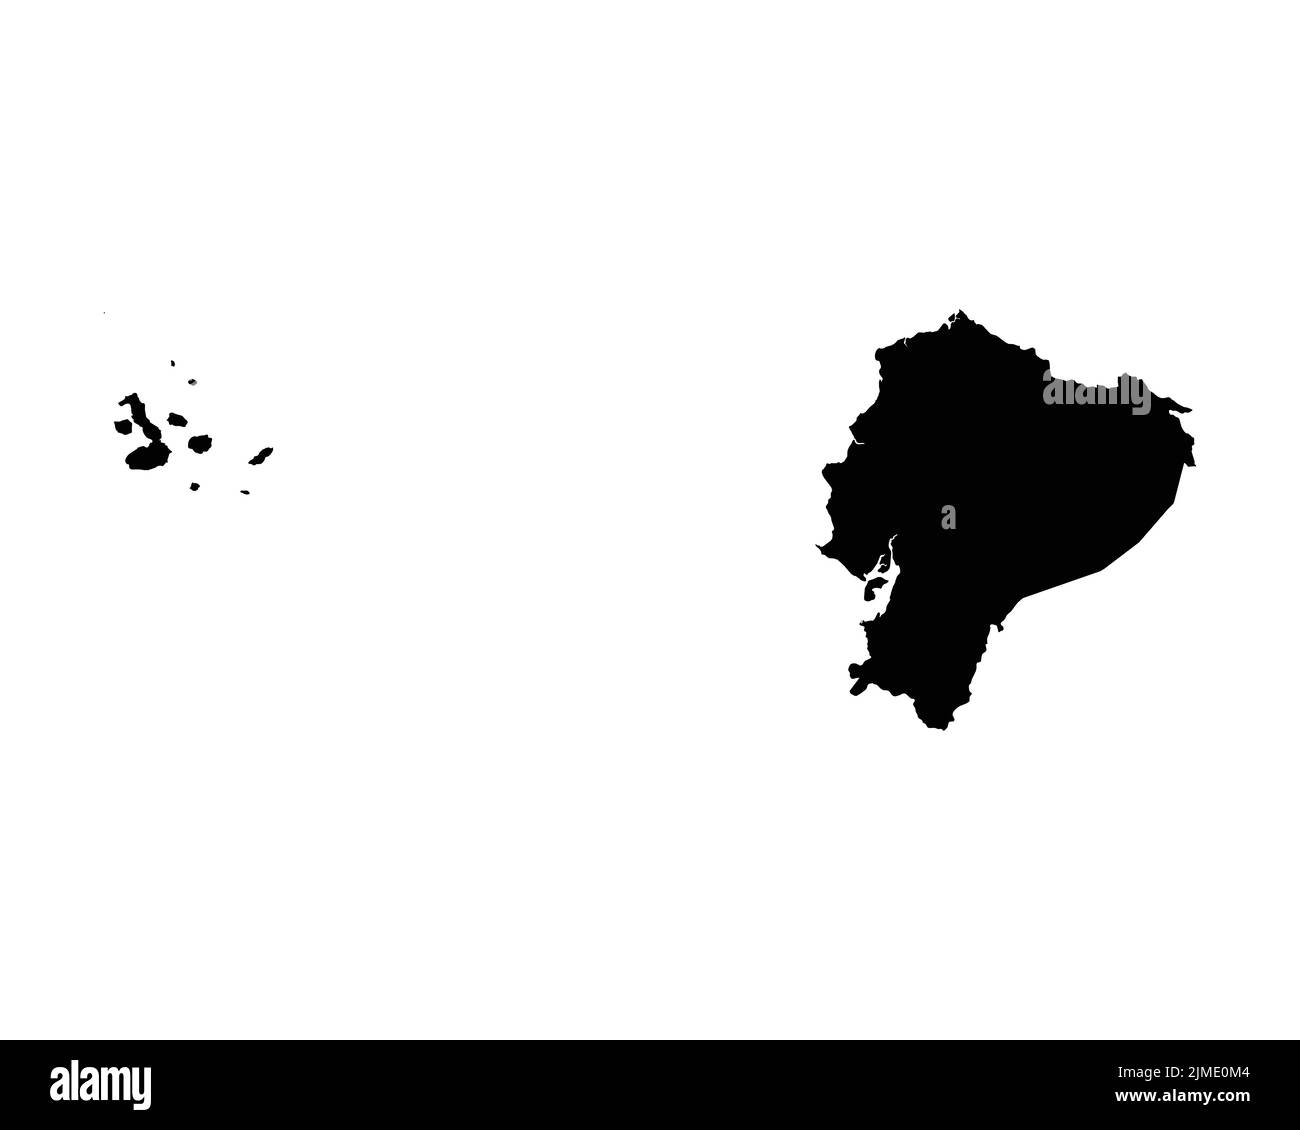 Mappa Ecuador. Mappa del Paese ecuadoriano. Bianco e nero National Nation Outline Geografia Border Boundary Shape territorio Vector Illustration EPS Clipar Illustrazione Vettoriale